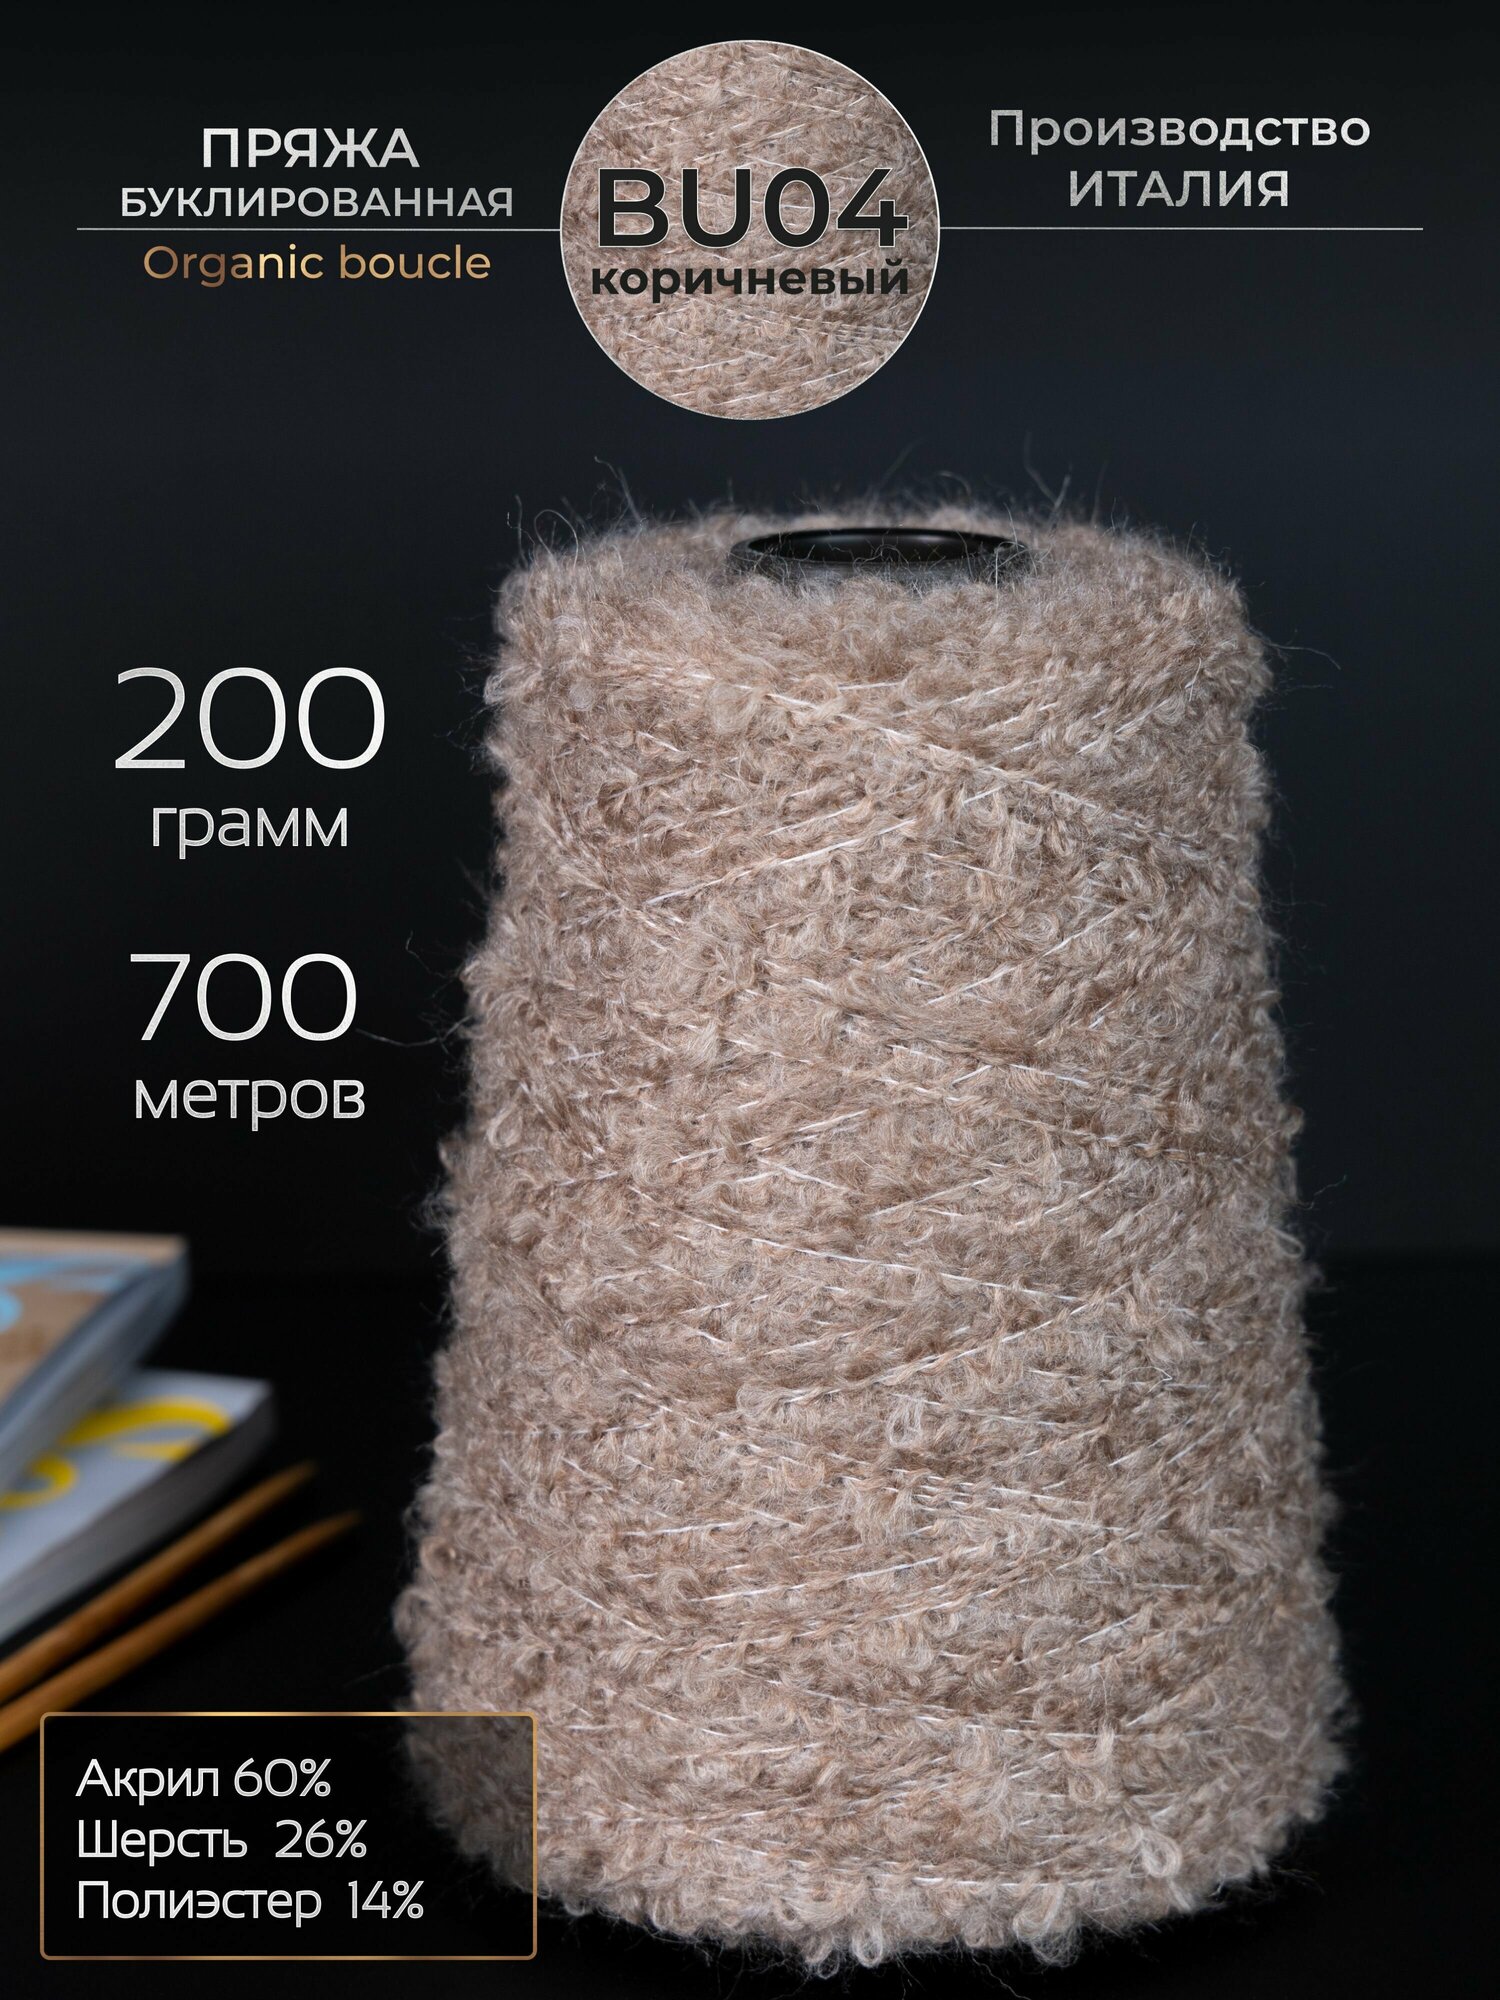 Пряжа для ручного вязания Буклированная Organic boucle, шерсть и акрил, 200 грамм, 700 метров